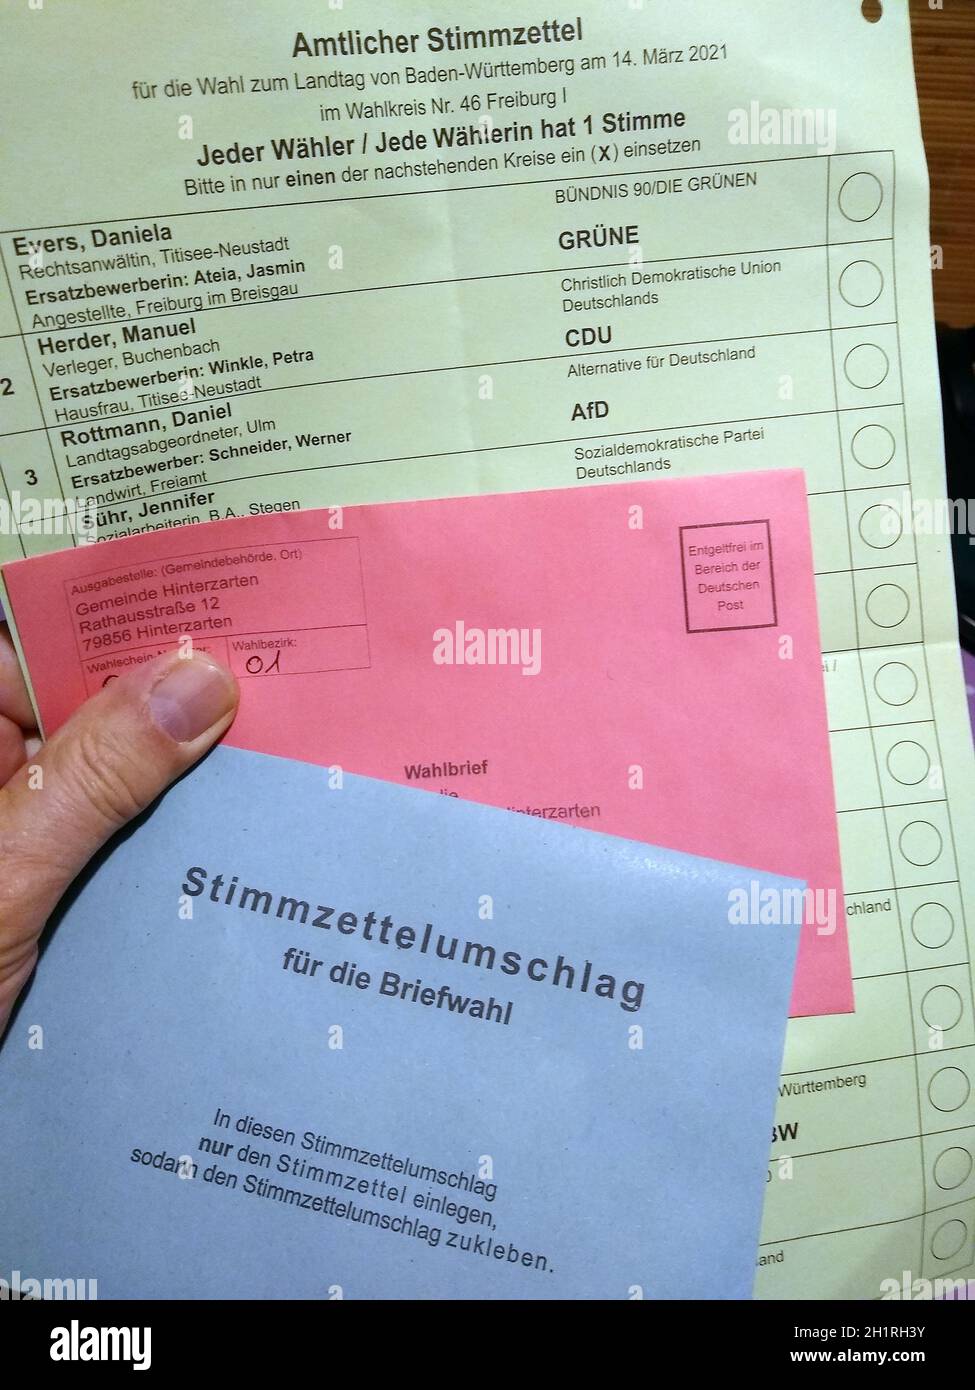 Stimmzettelumschlag, Wahlschein und Kandidatenliste für die Landtagswahl am 14.03.21    Themenbild - Landtagswahl in Baden-Württemberg 2021 Stock Photo